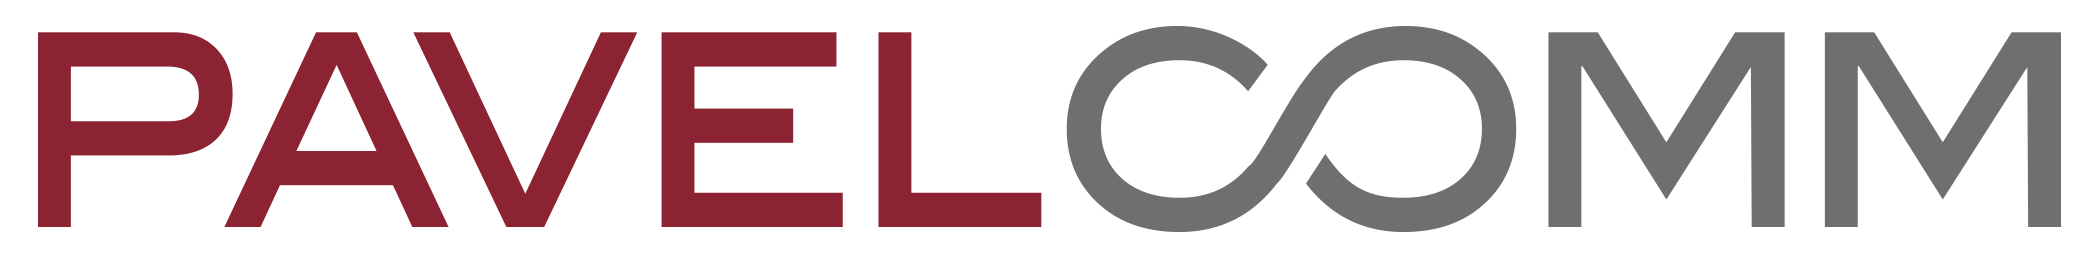 PAVELCOMM INC logo